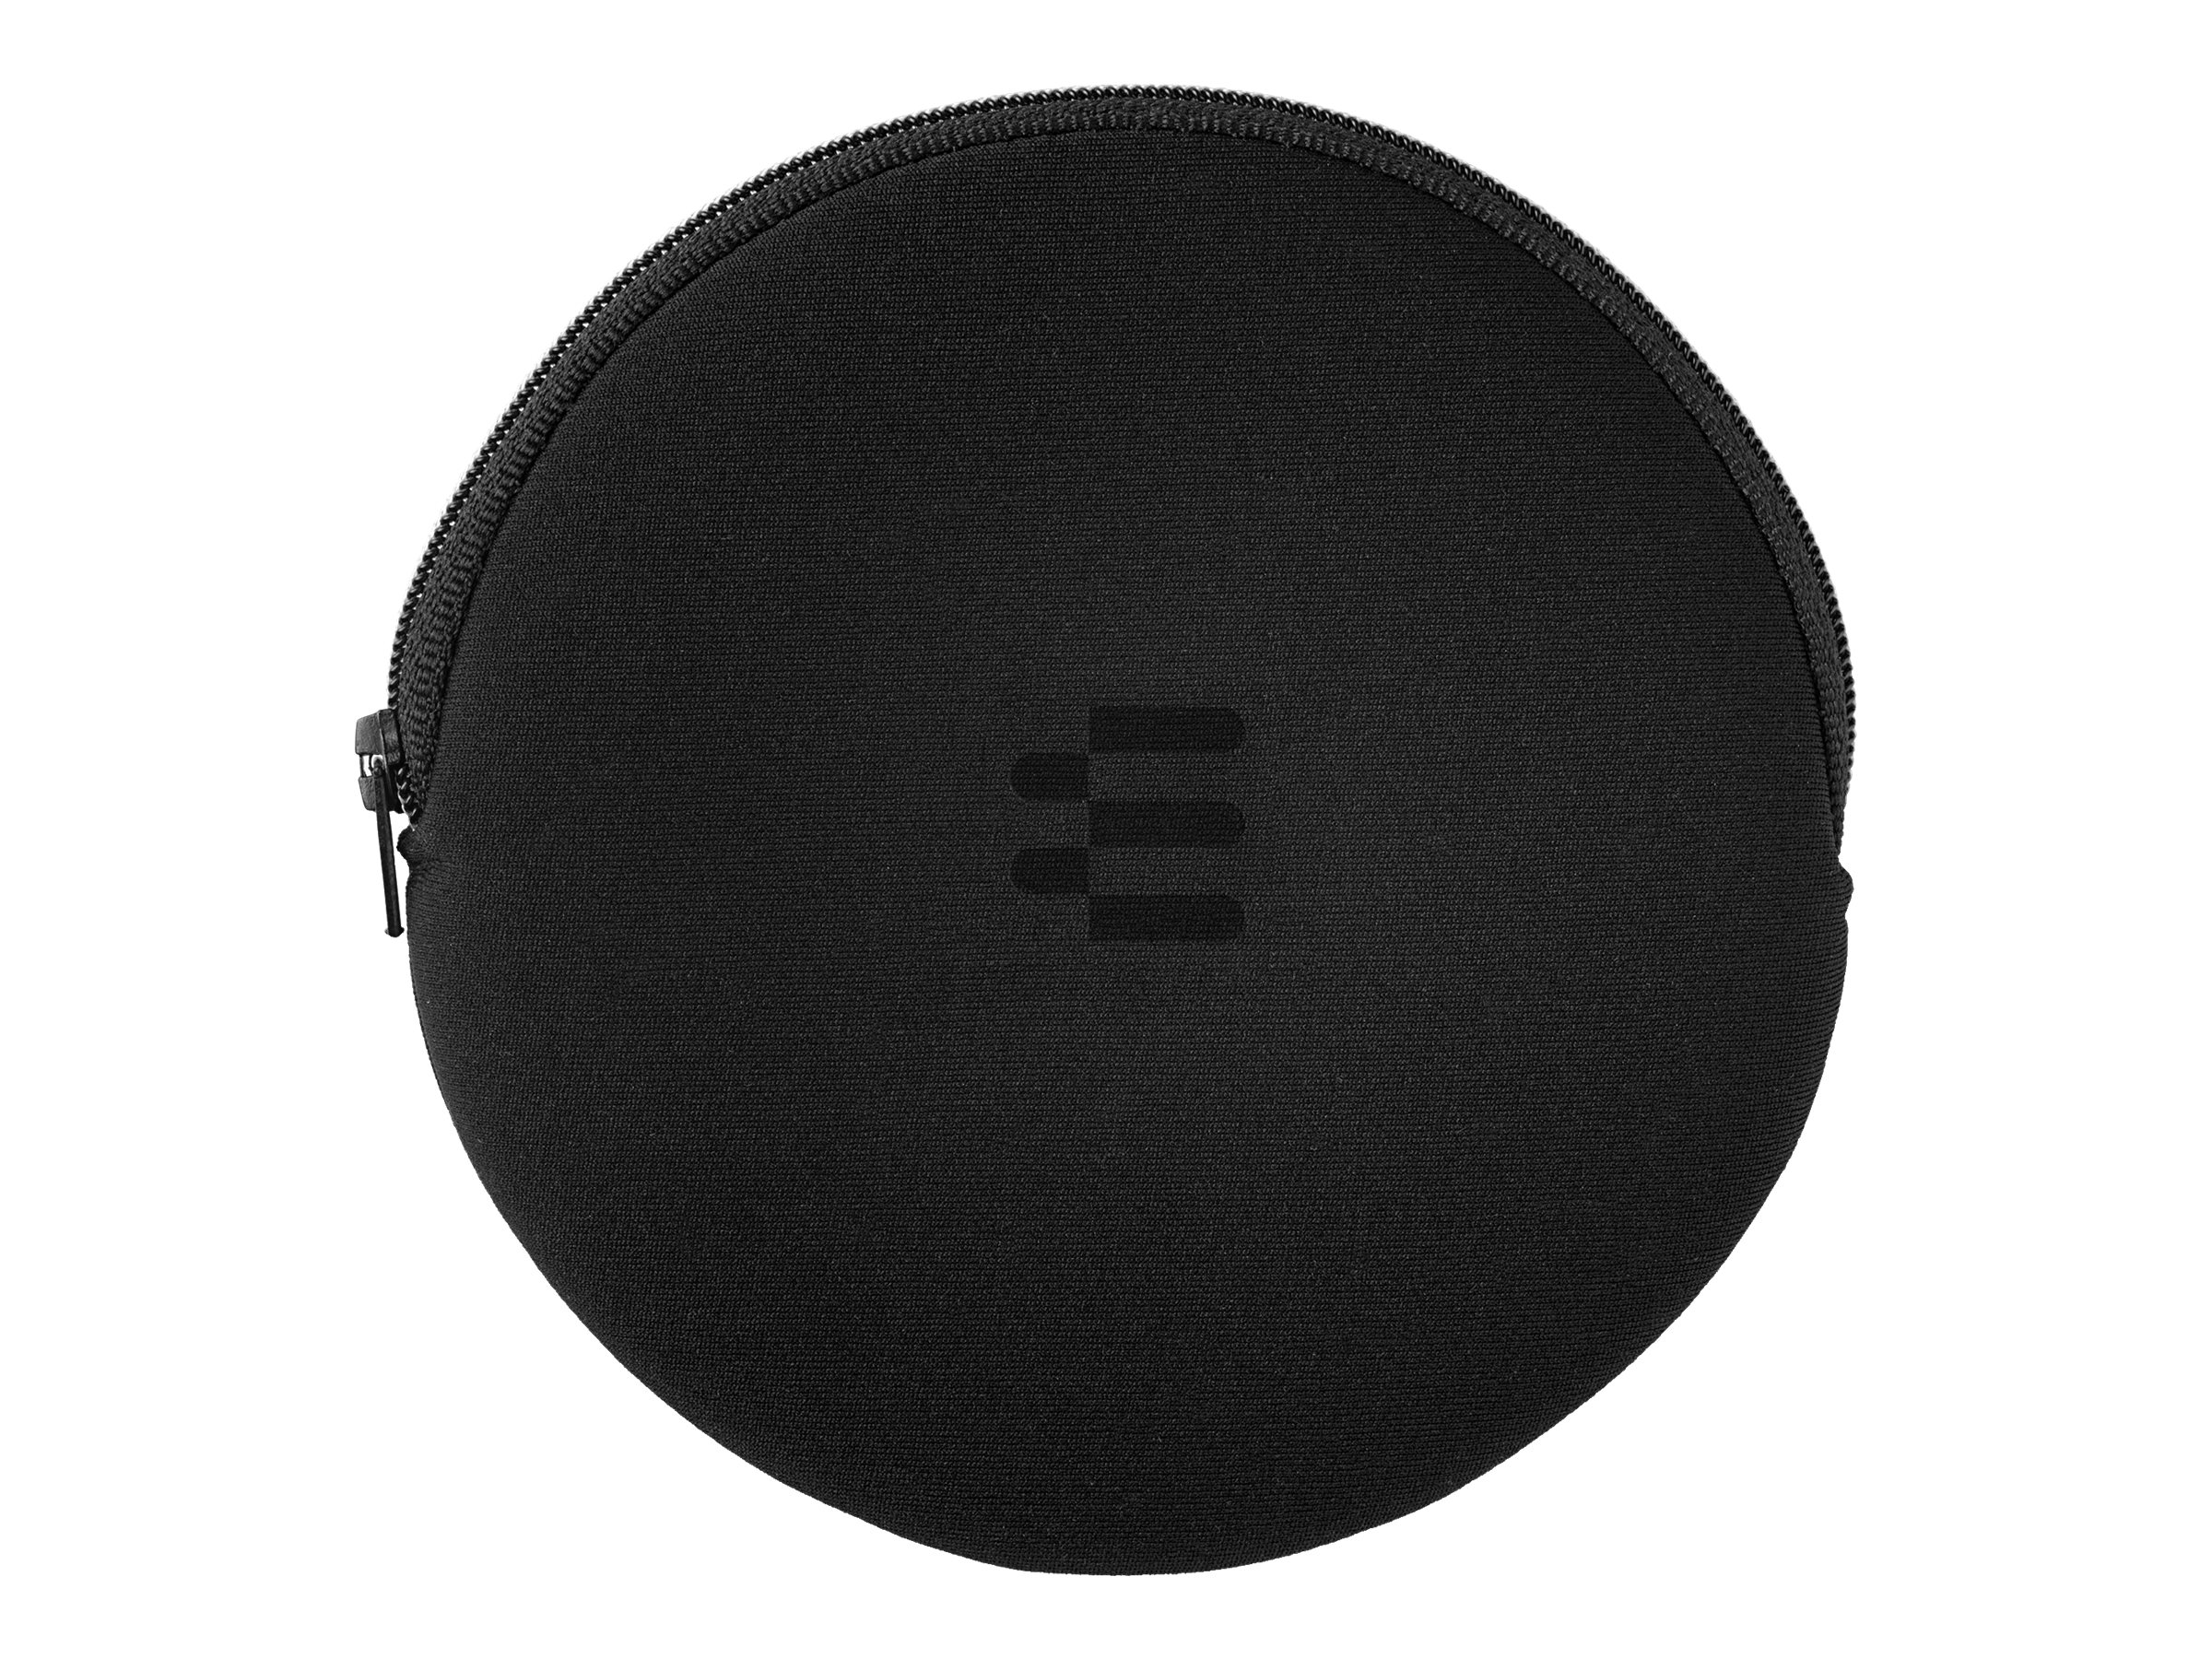 EPOS EXPAND 40 + - Haut-parleur intelligent - Bluetooth - sans fil, filaire - USB-C - gris, noir - Optimisé pour la CU - 1000662 - Speakerphones